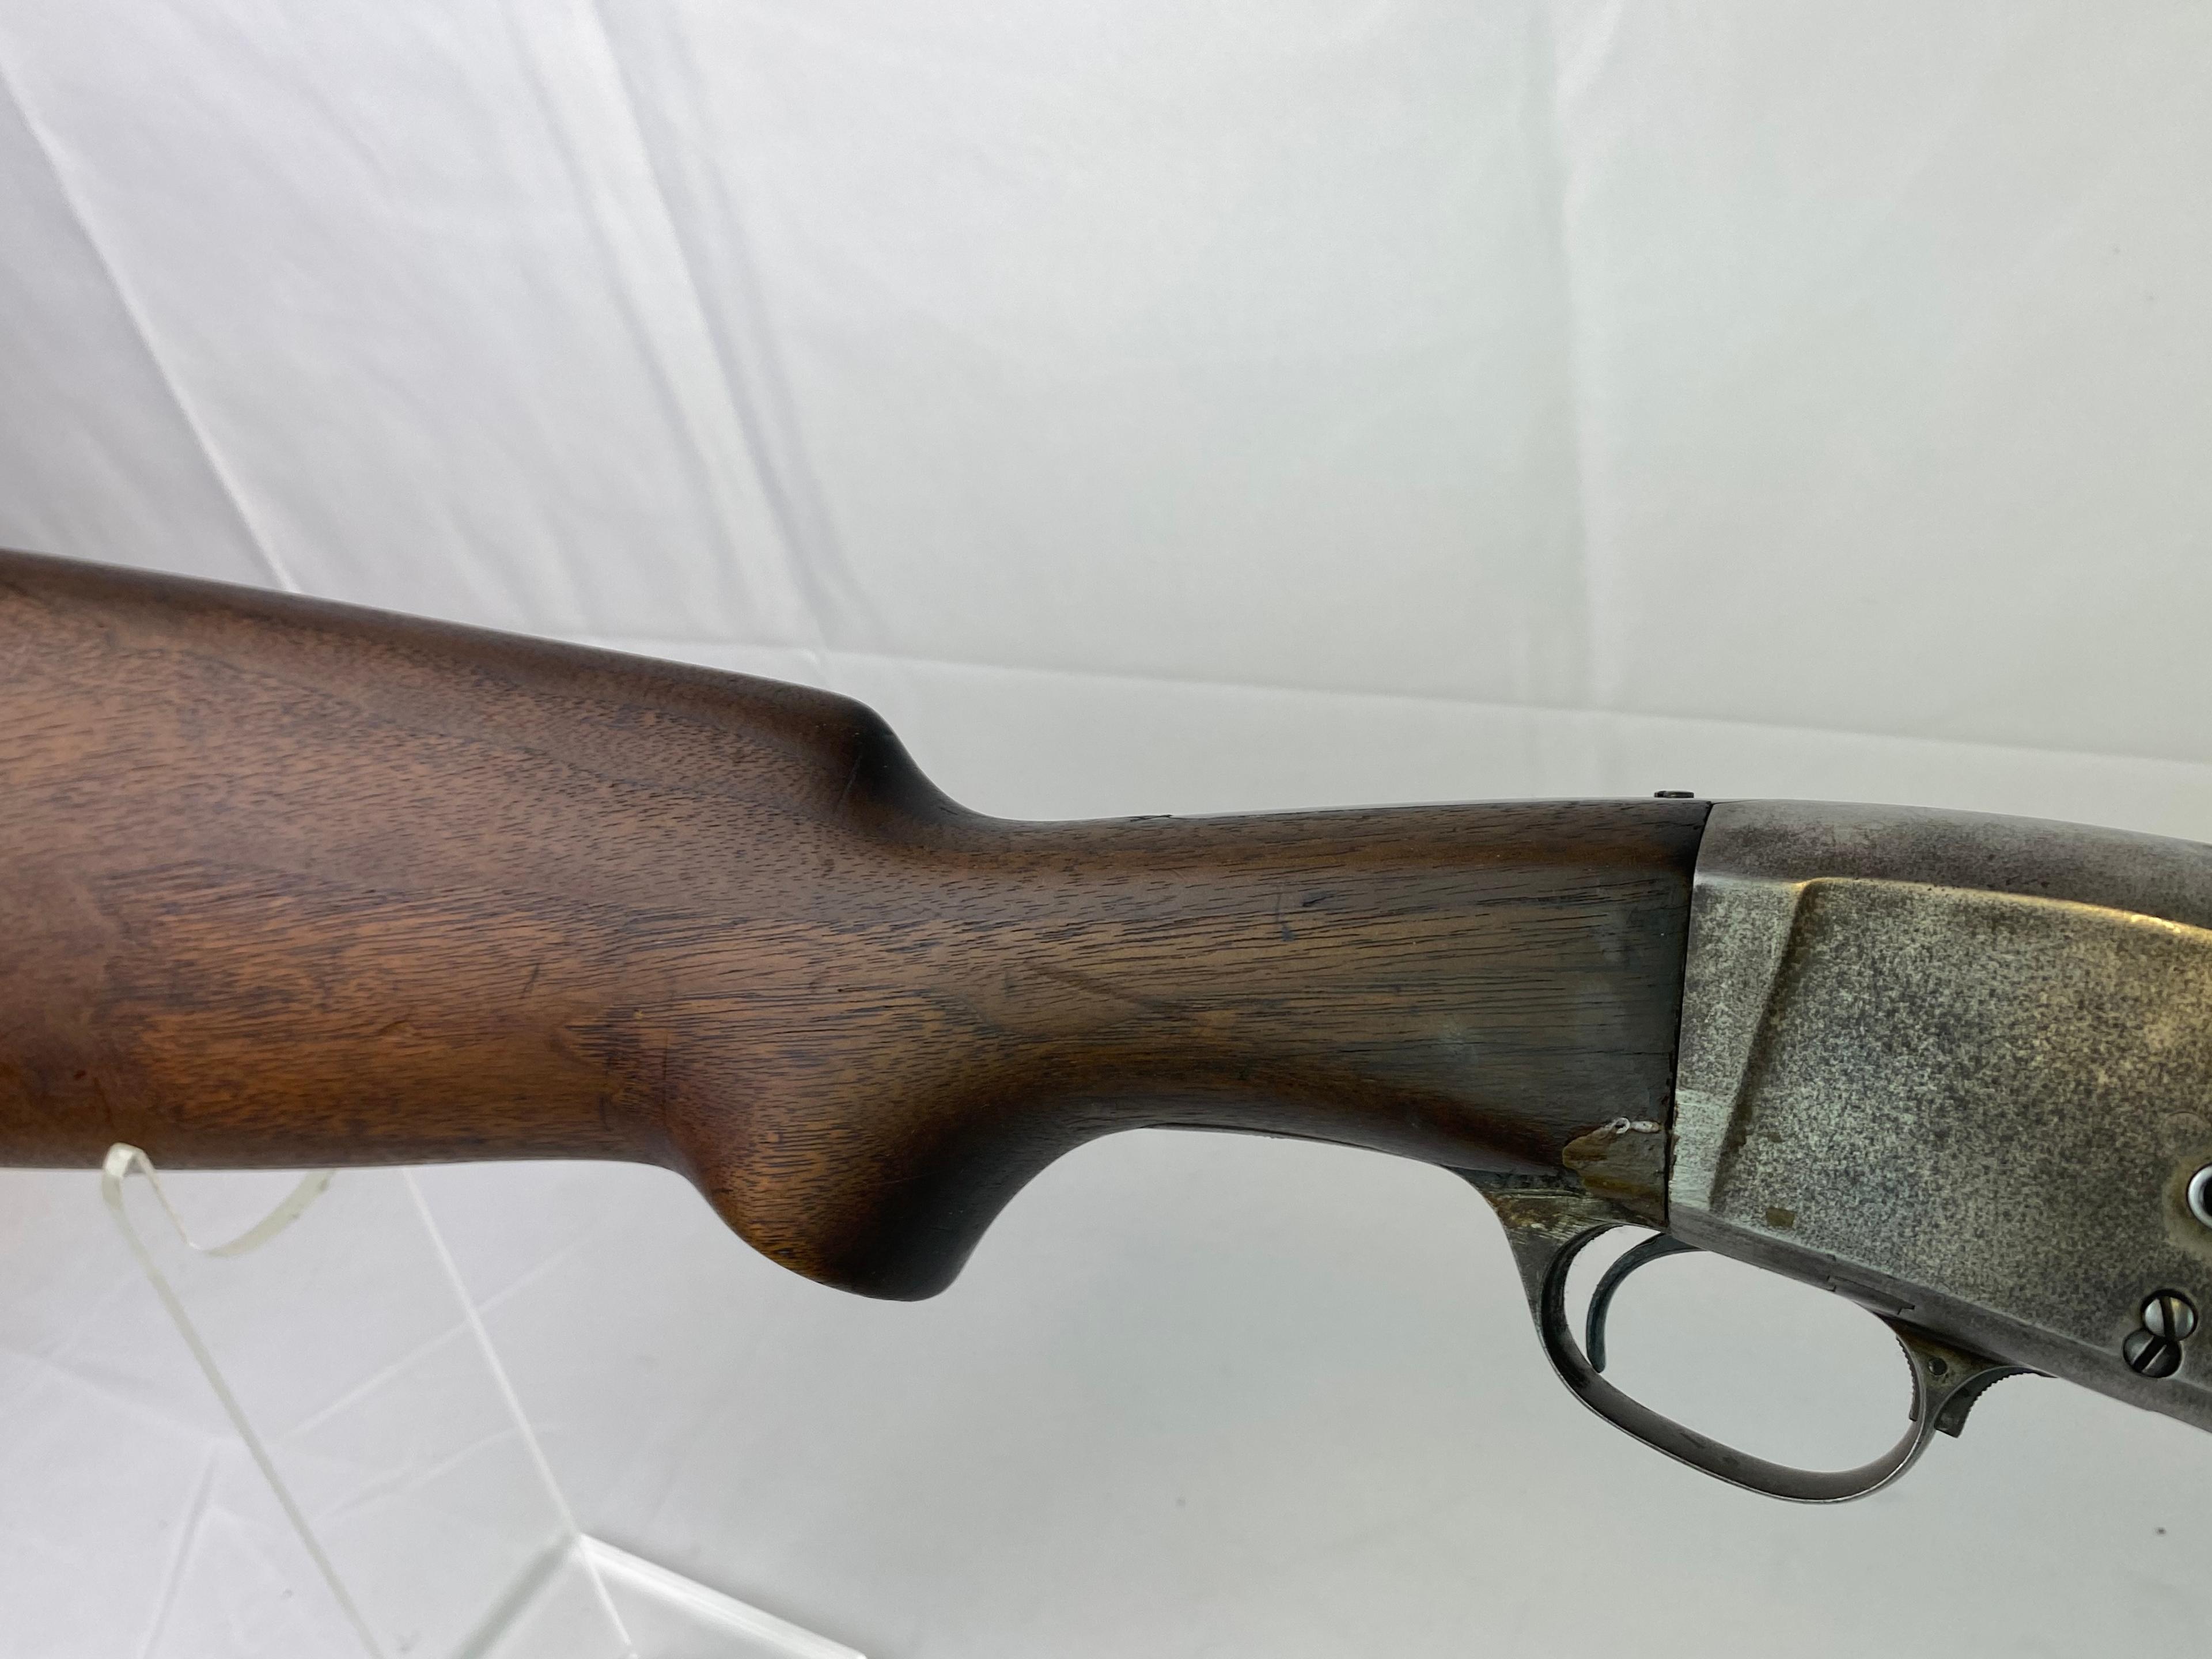 Remington UMC Model 10-A 12 GA. Pump Shotgun